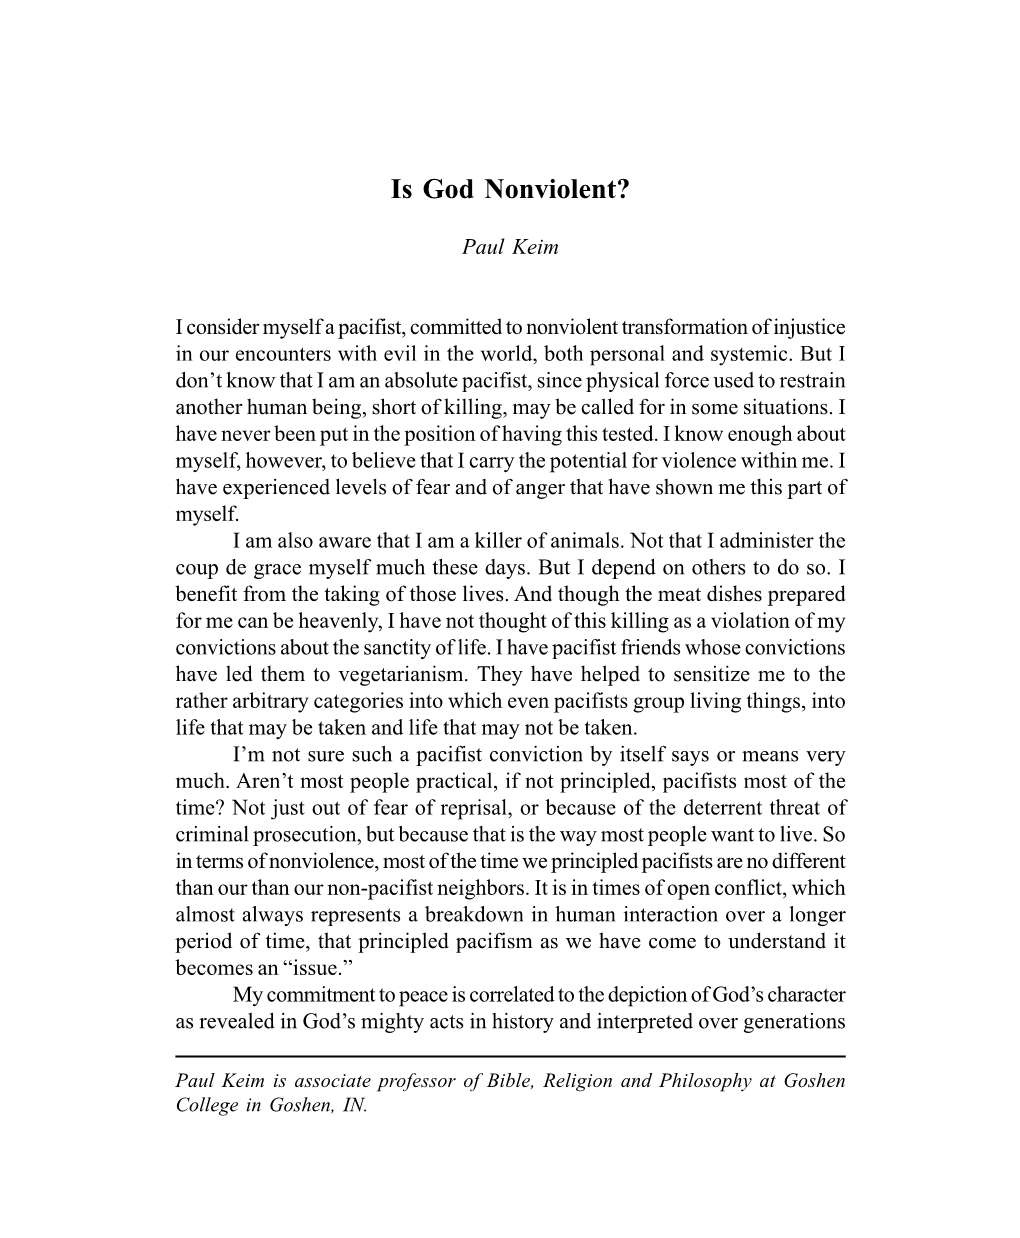 Is God Nonviolent? (The Conrad Grebel Review, Winter 2003)